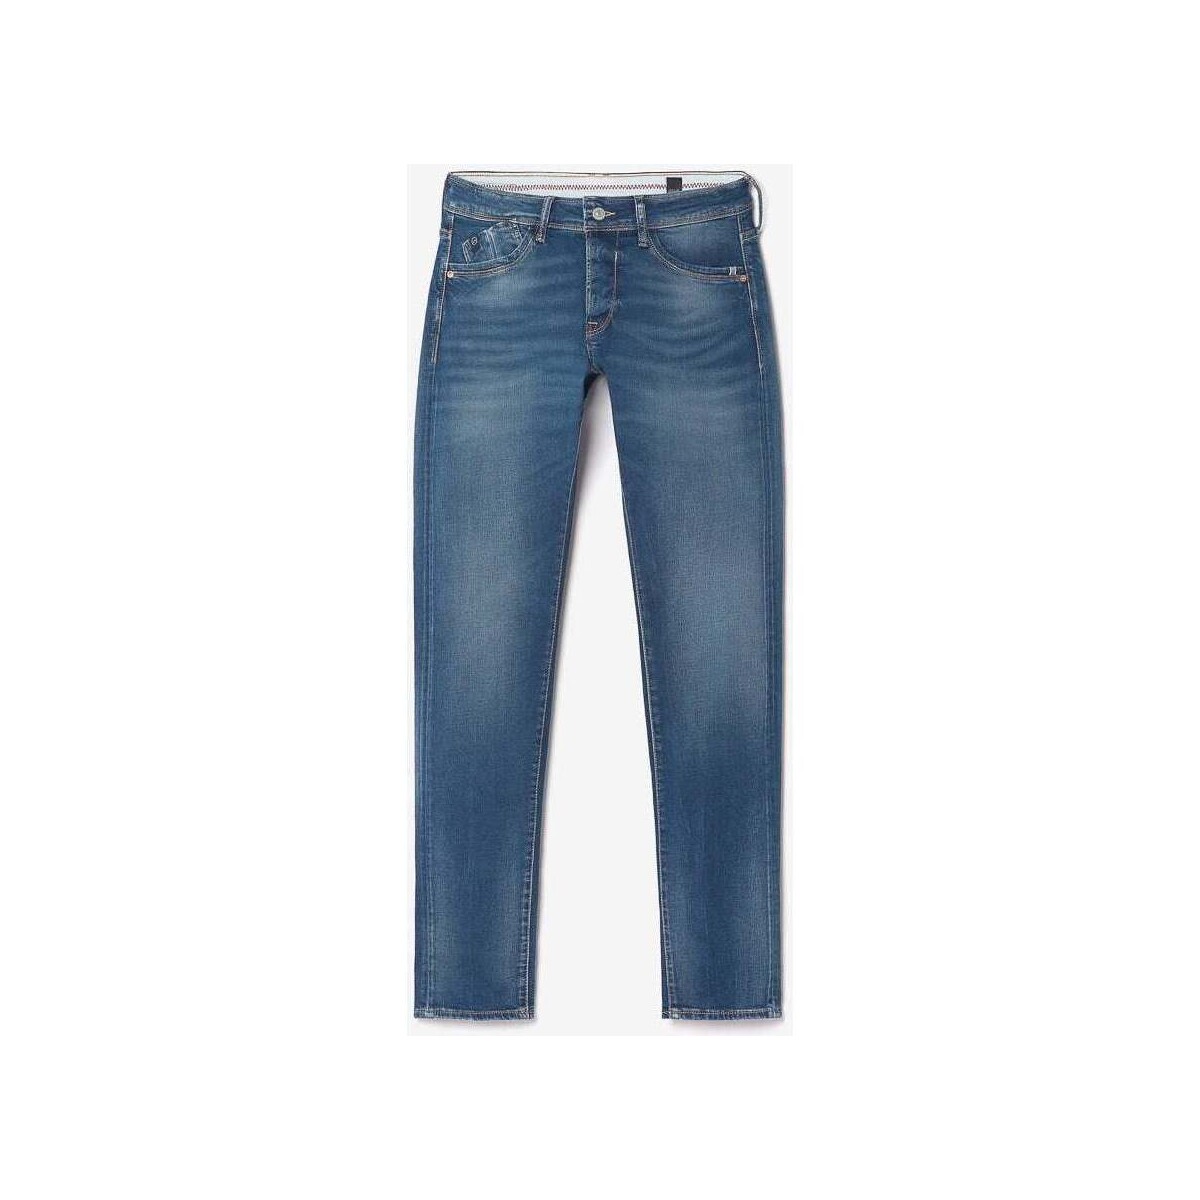 Le Temps des Cerises Bleu Lazare 700/11 adjusted jeans bleu KH9pNgLy